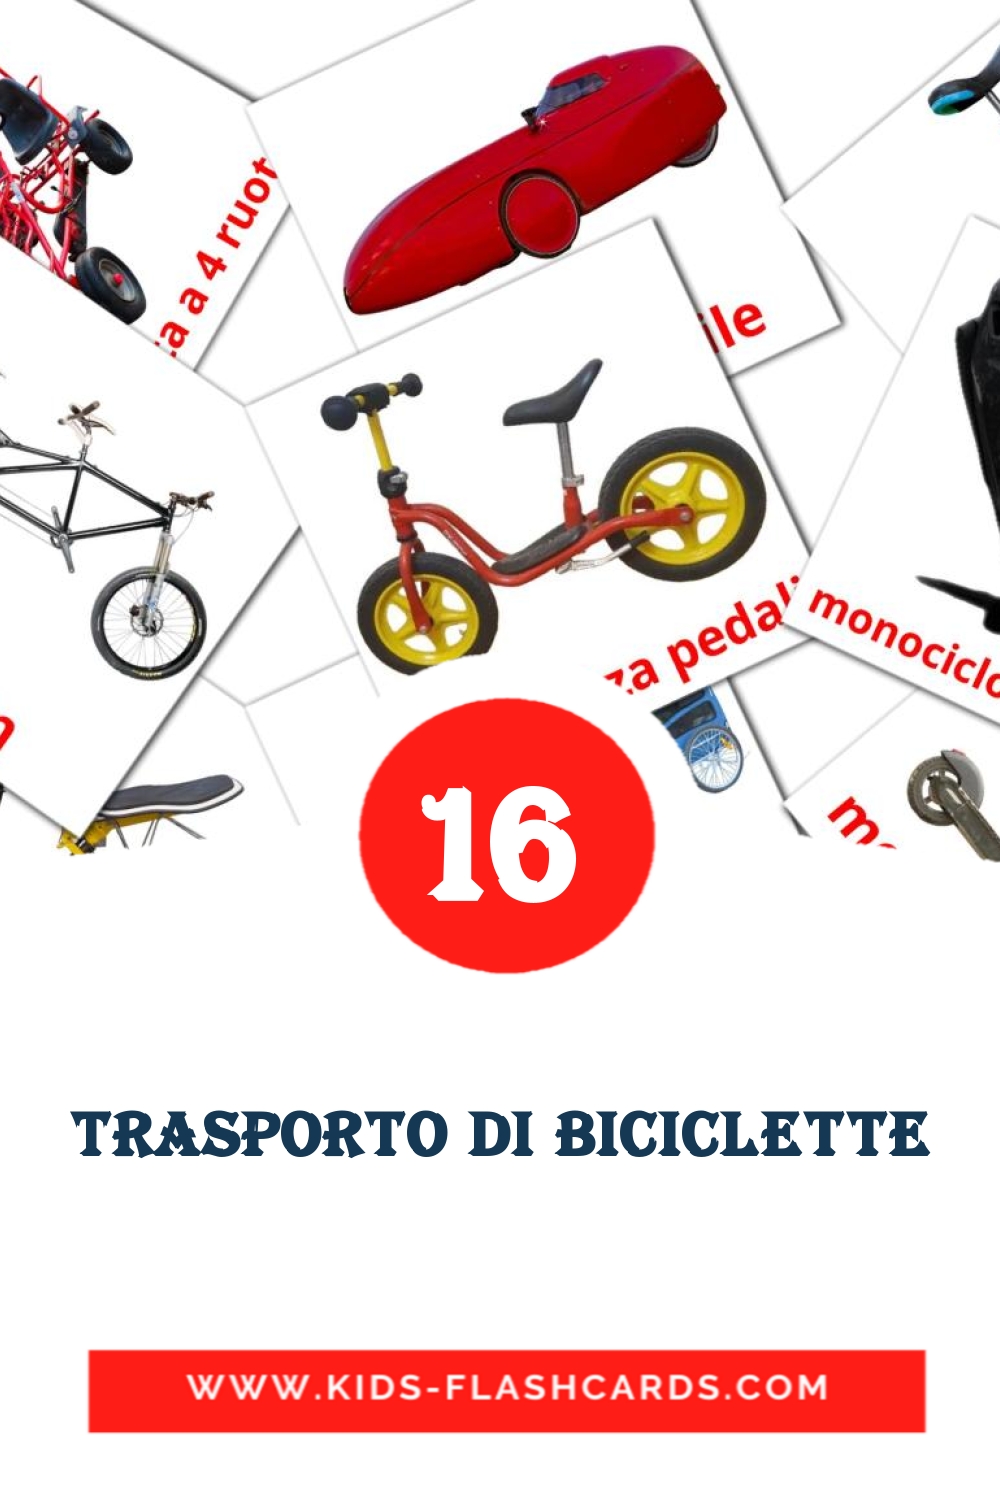 Trasporto di biciclette на итальянском для Детского Сада (16 карточек)